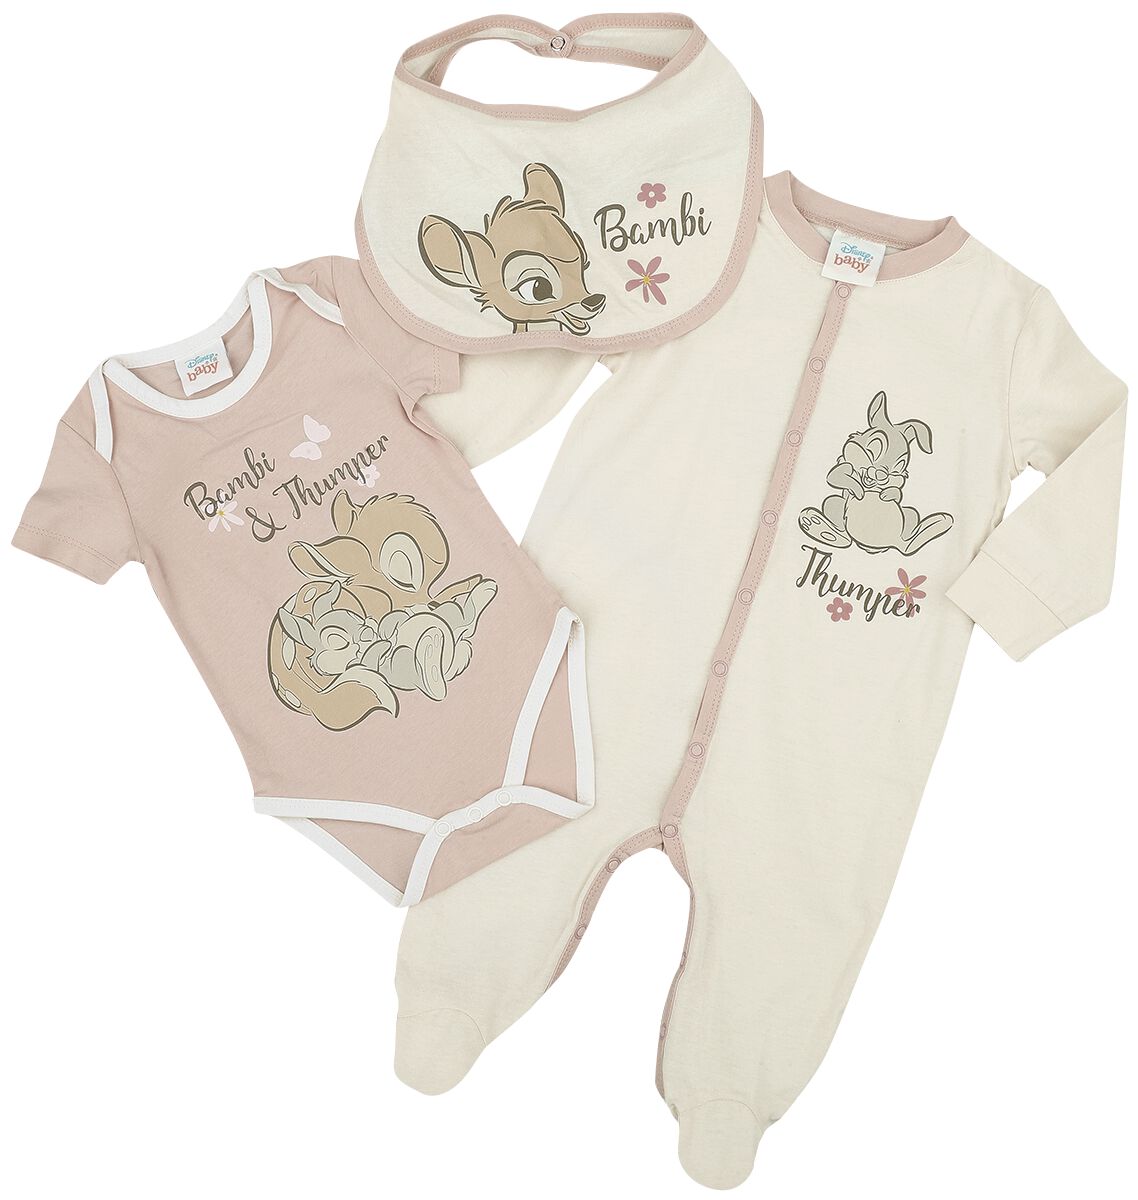 Bambi - Disney Set für Babys - Kids - Bambi - für Mädchen - multicolor  - EMP exklusives Merchandise!